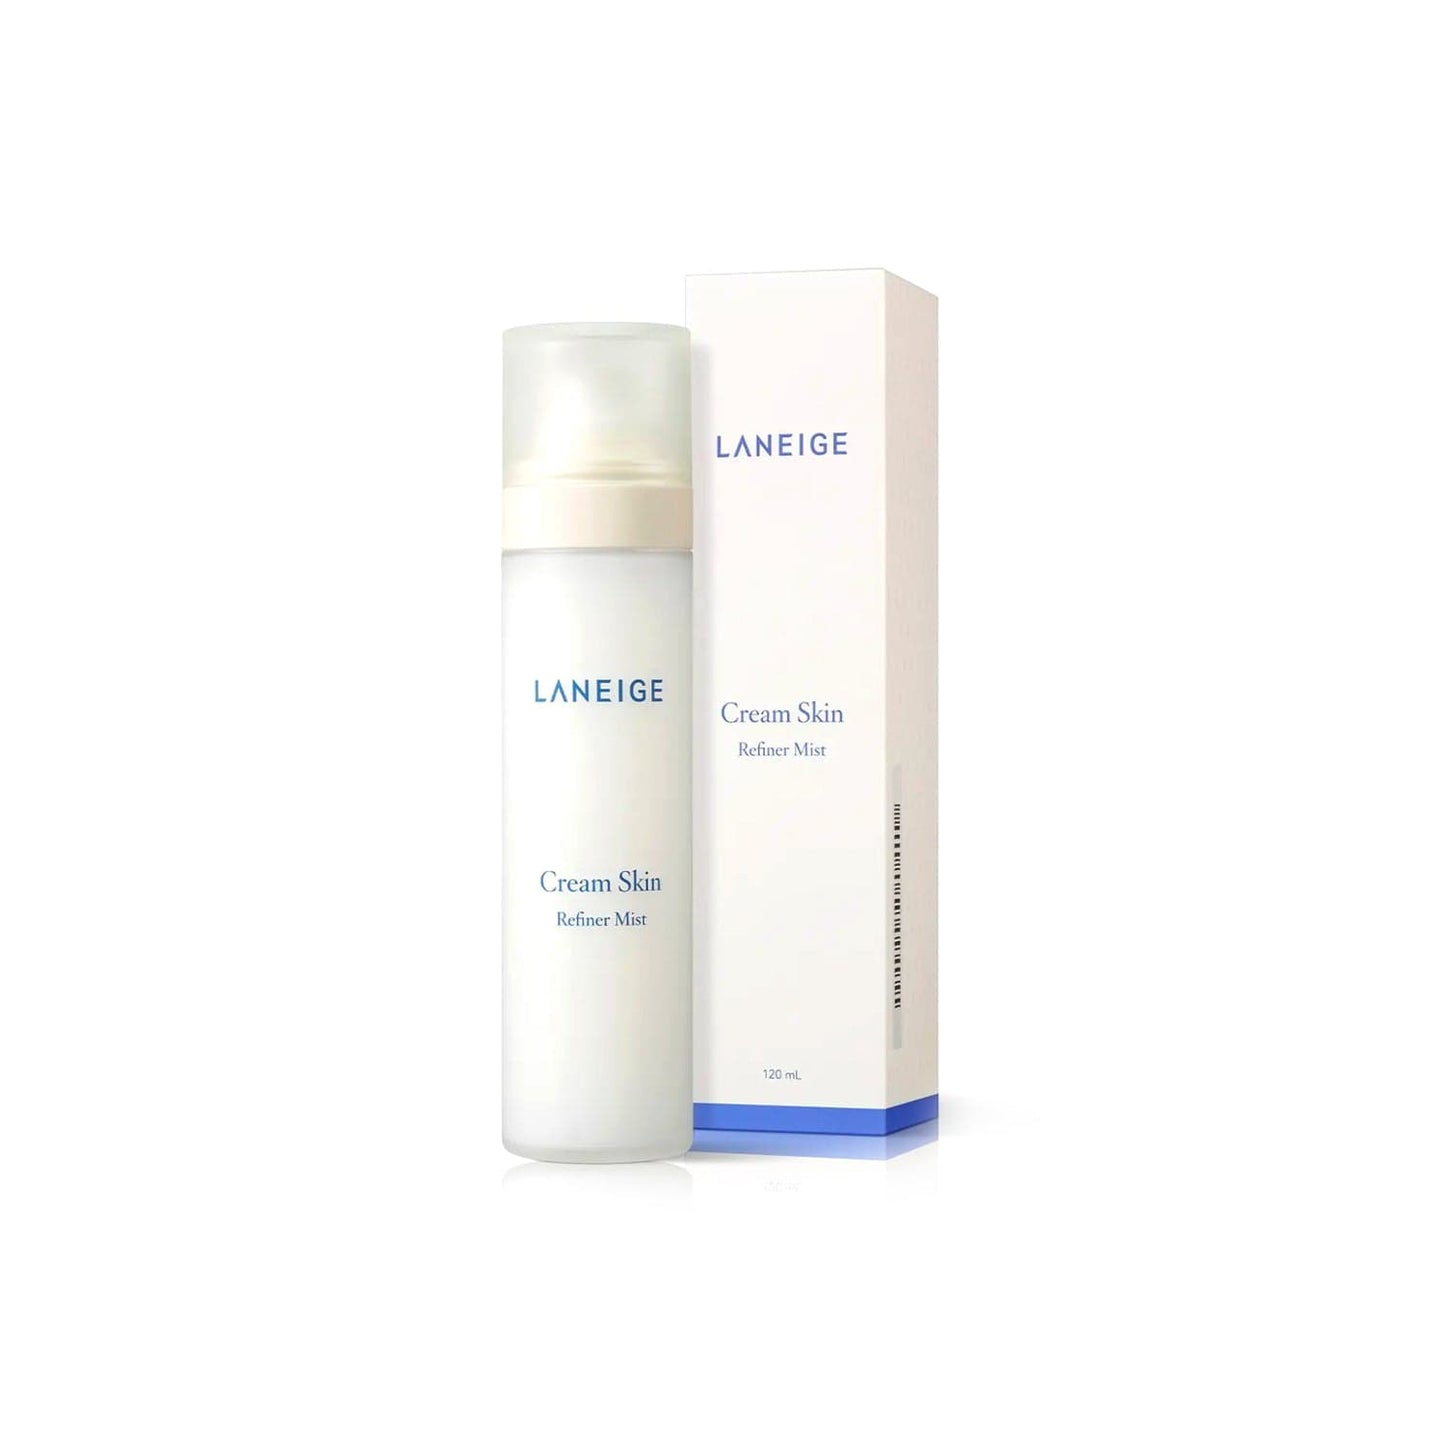 LANEIGE - Brume cream skin "Cream Skin Mist" - 120ml - Laneige - Ethni Beauty Market